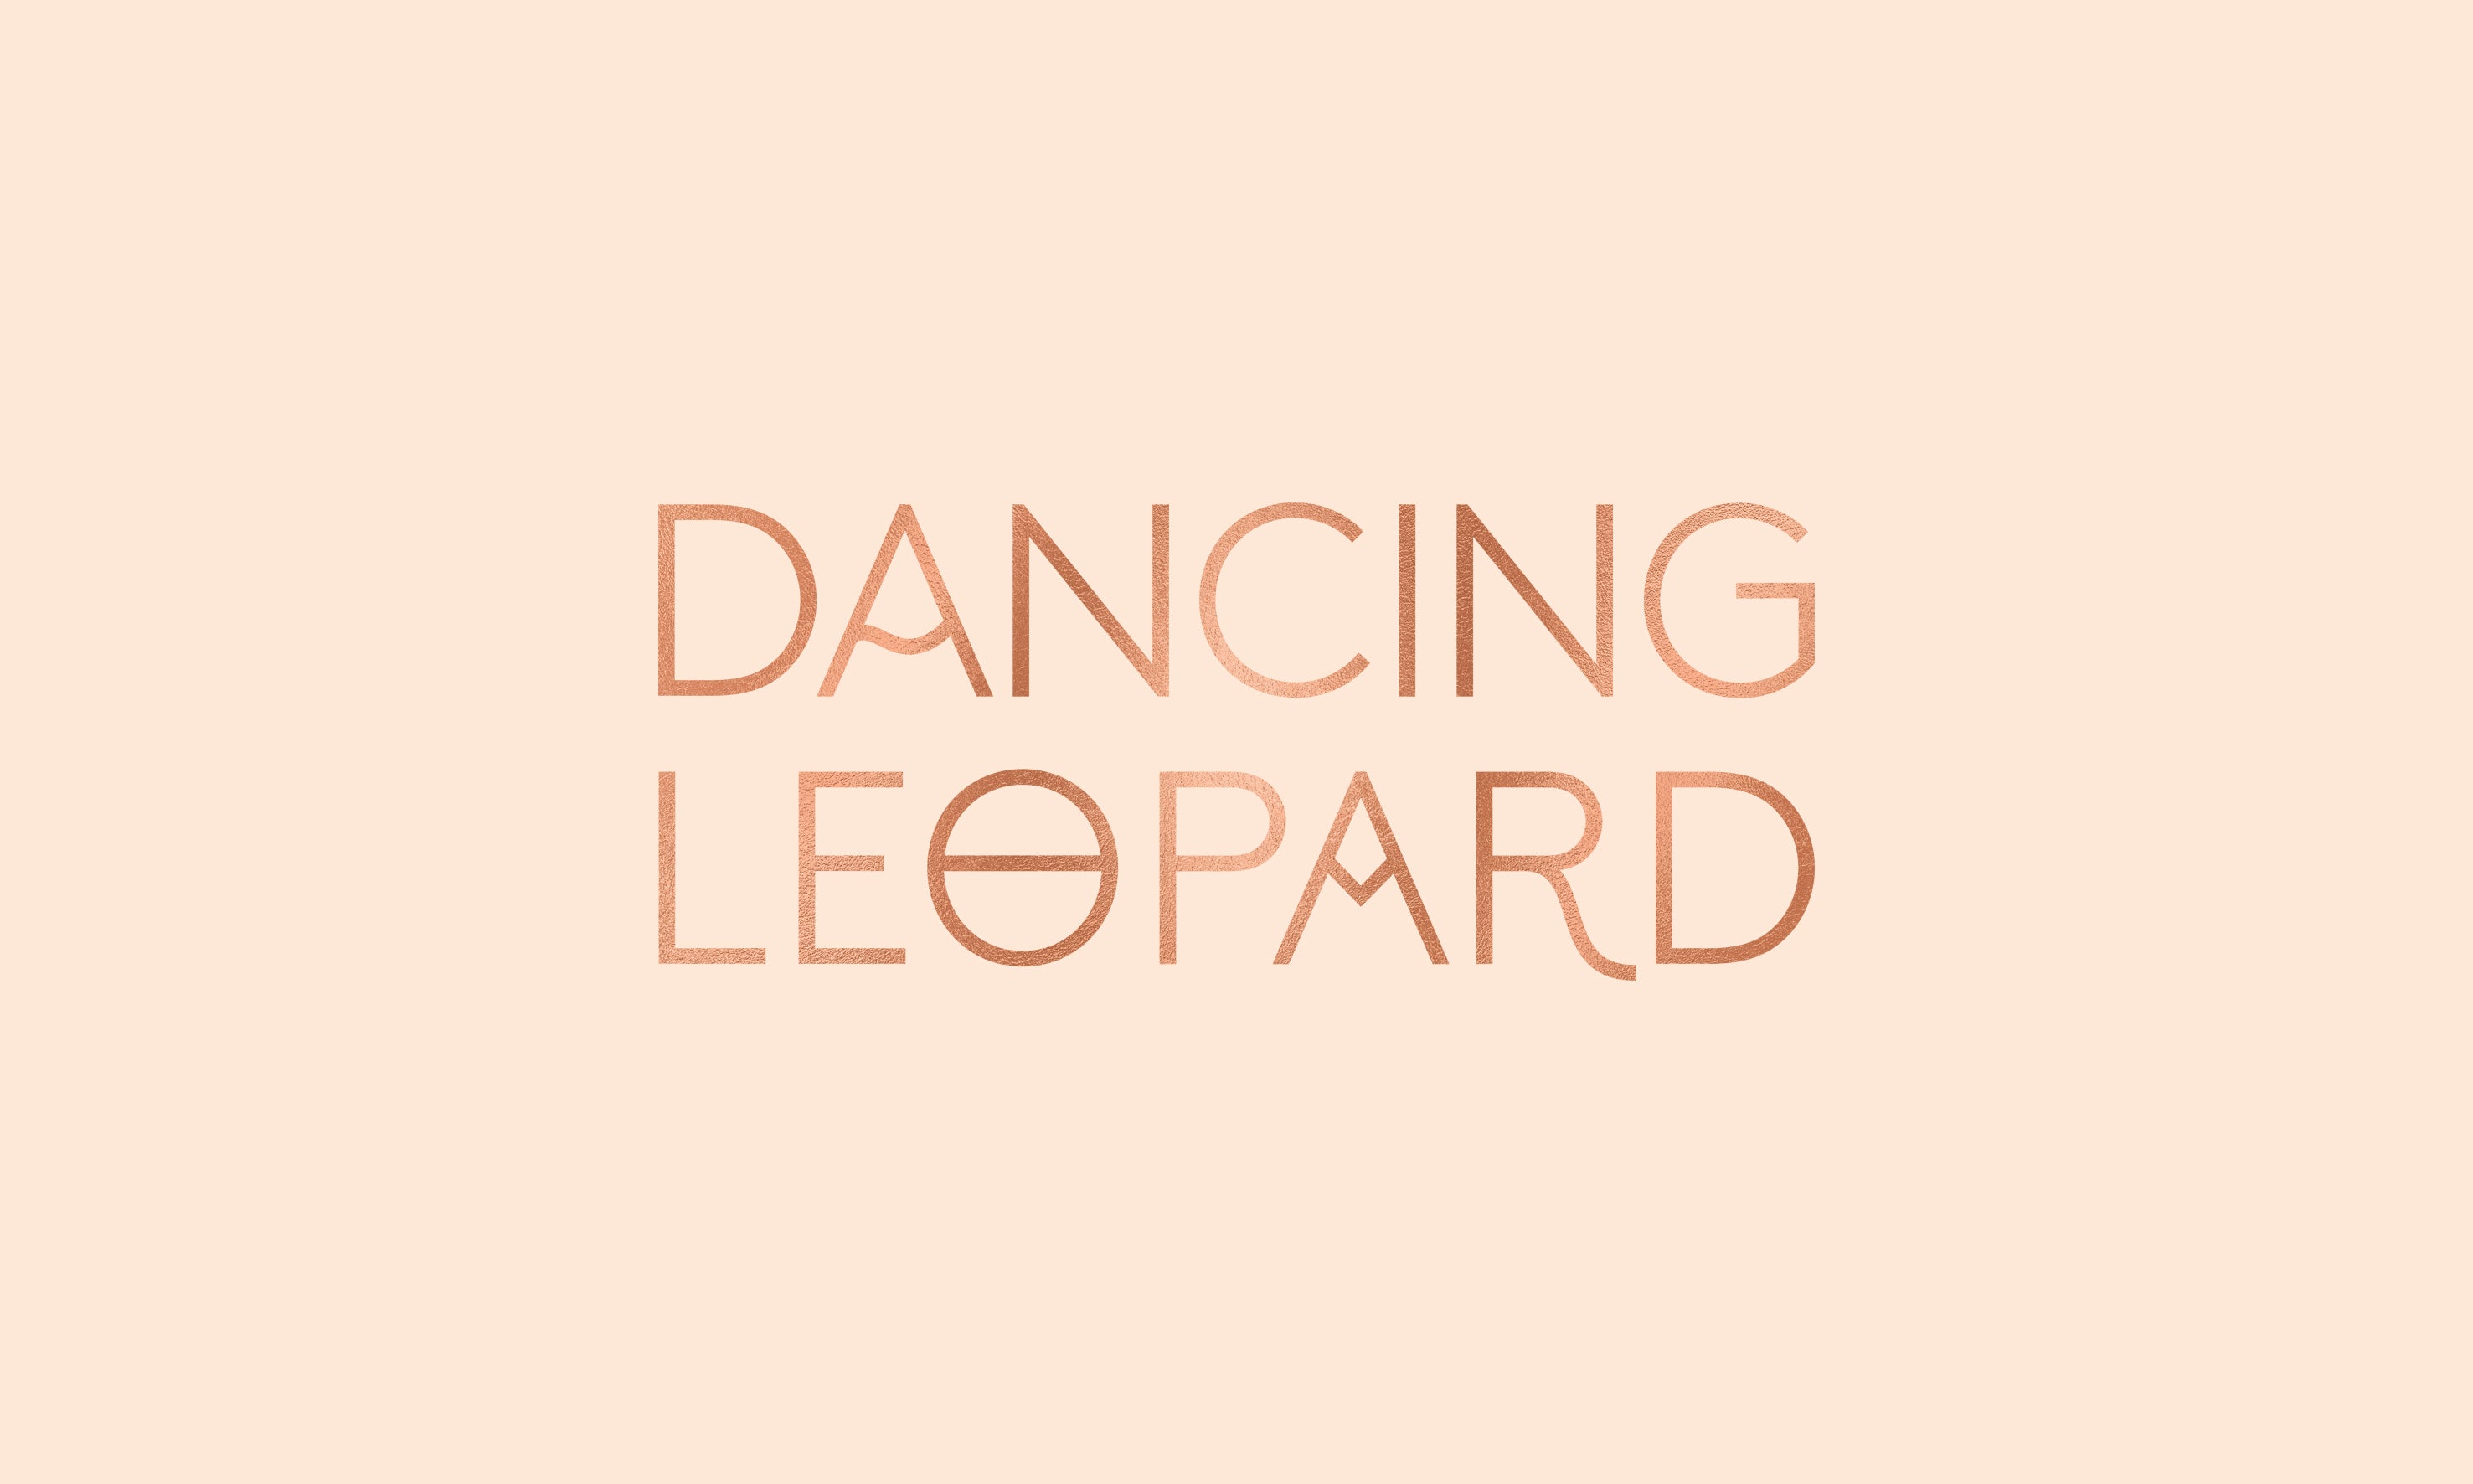 Σετ νυχτικό και ρόμπα σε nude λεοπάρ της Dancing Leopard